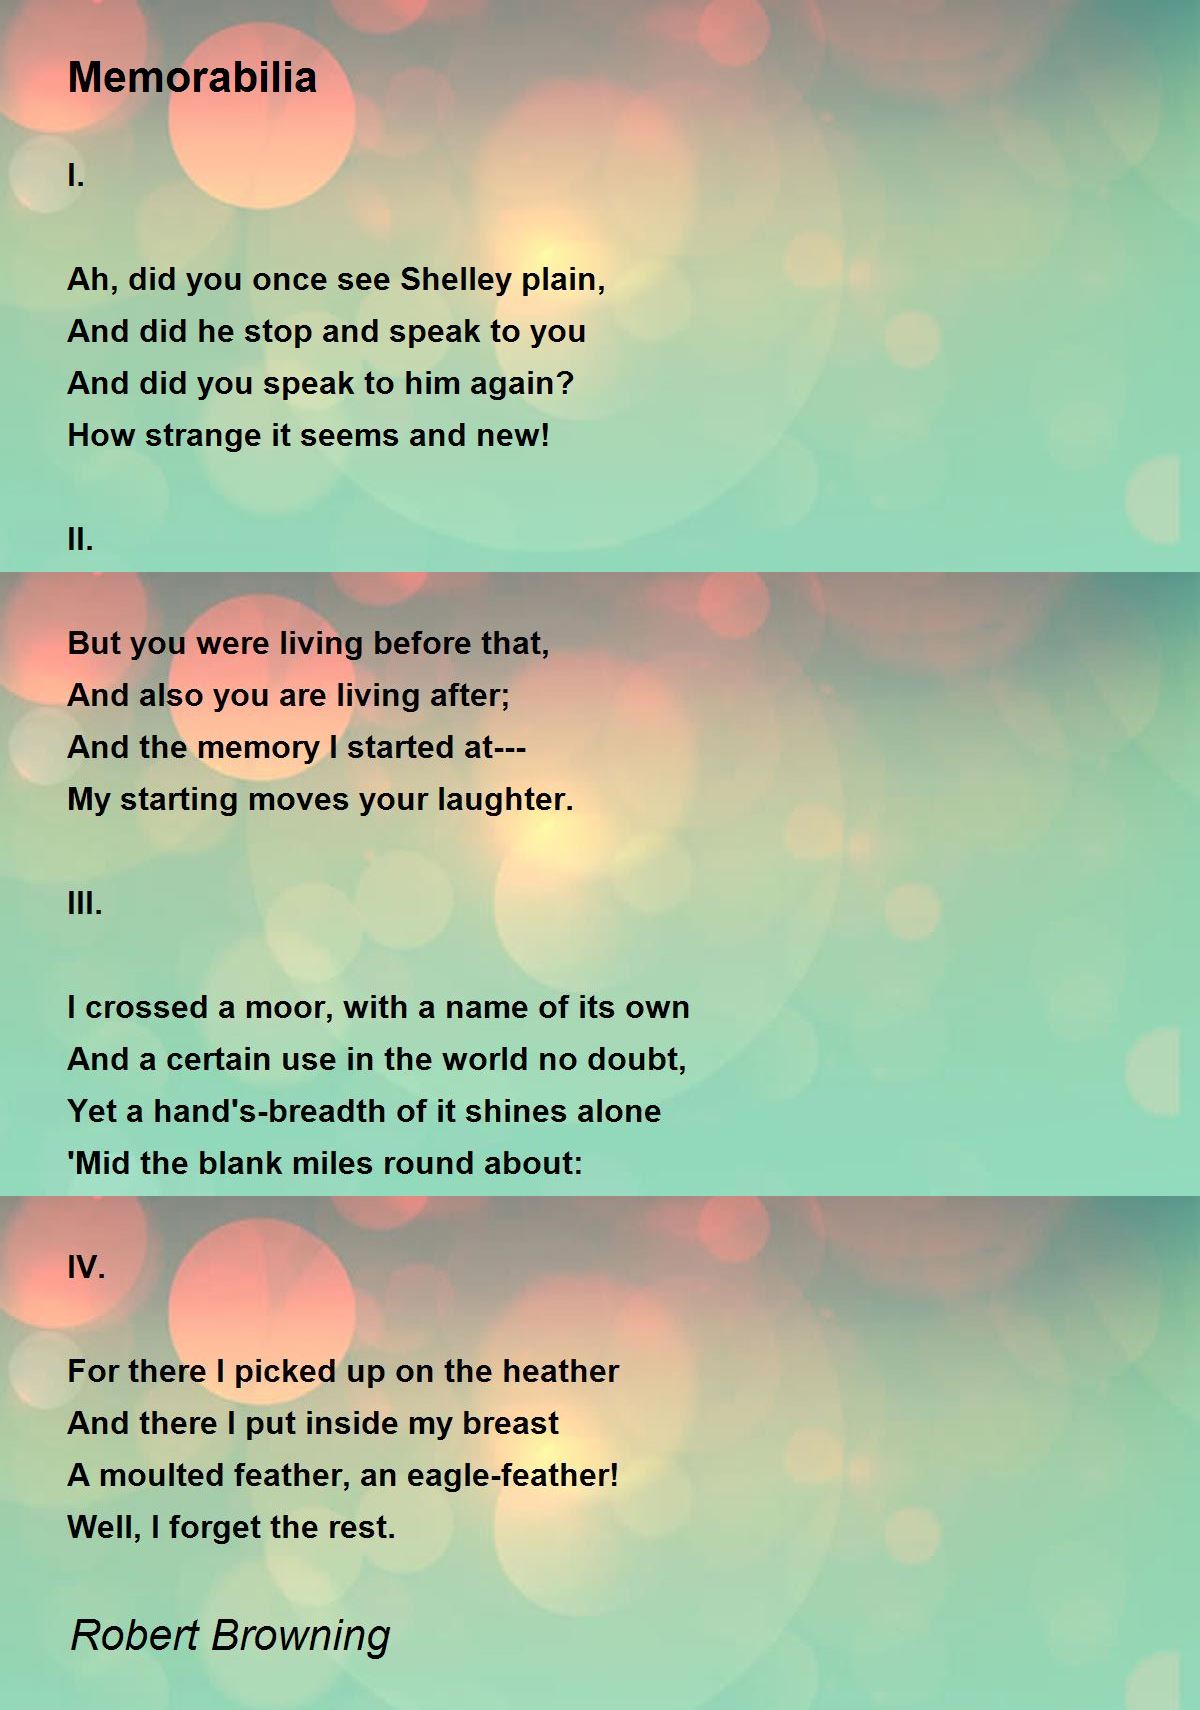 Memorabilia - Memorabilia Poem by Robert Browning